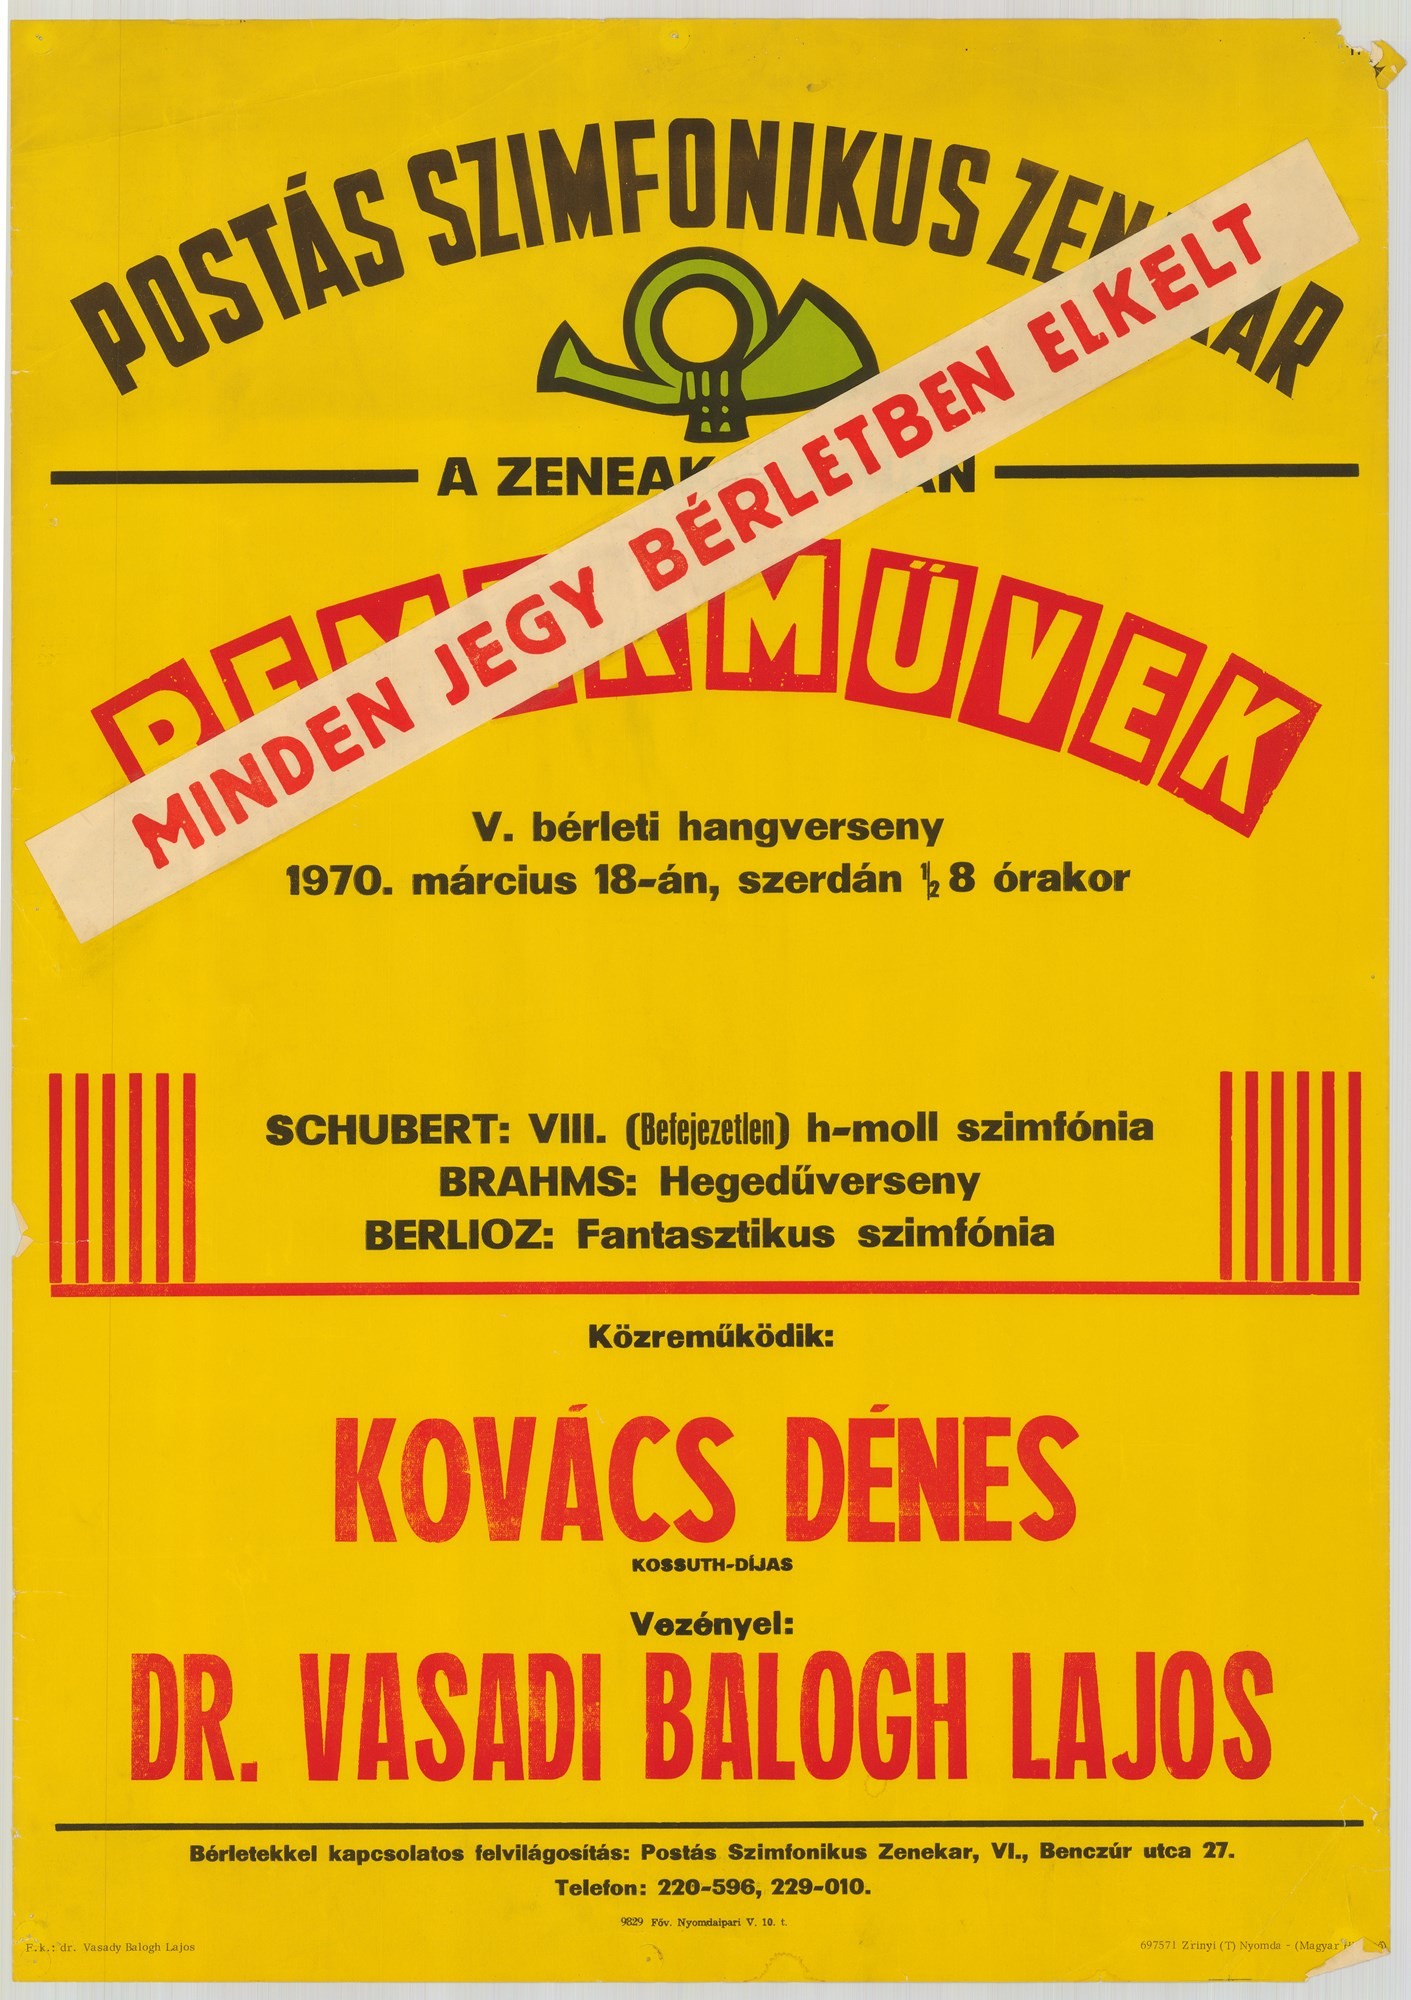 Plakát - Postás Szimfonikus Zenekar a Zeneakadémián, Remekművek, 1970 (Postamúzeum CC BY-NC-SA)